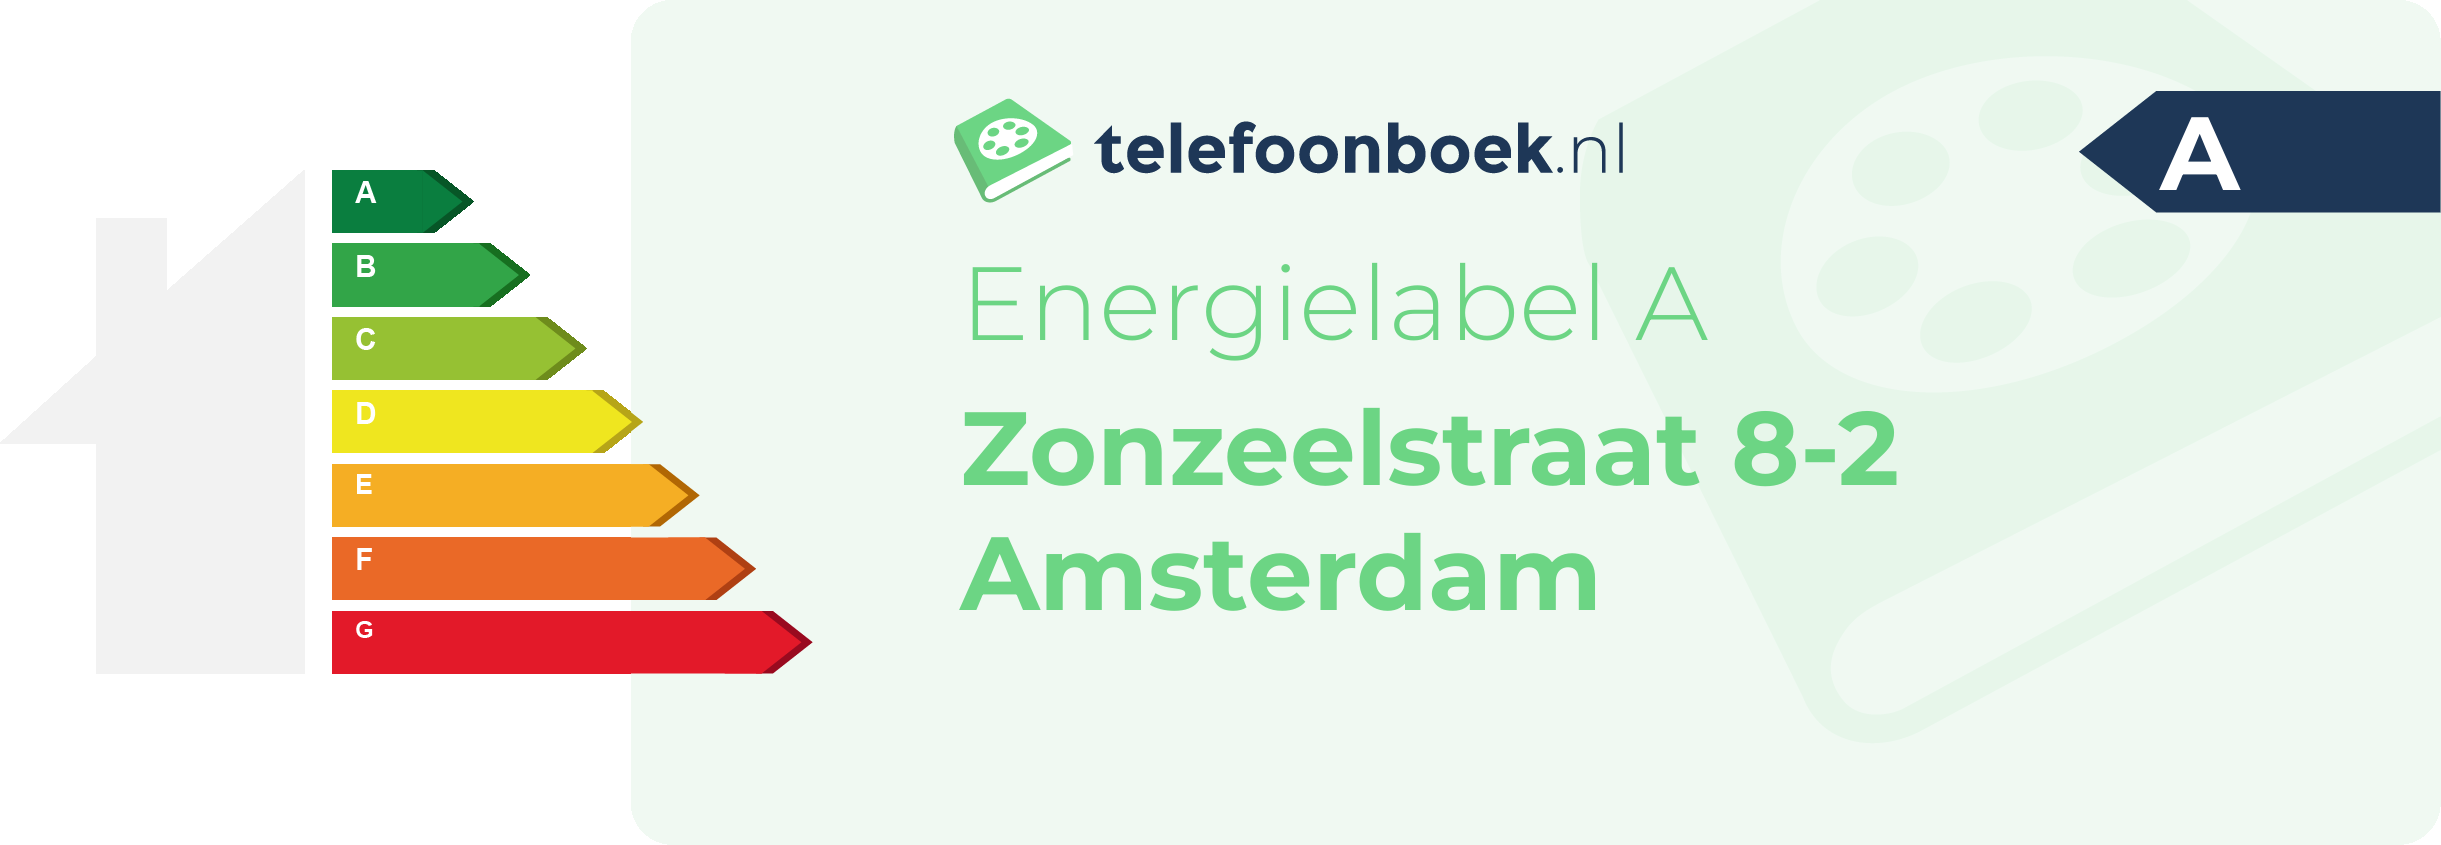 Energielabel Zonzeelstraat 8-2 Amsterdam